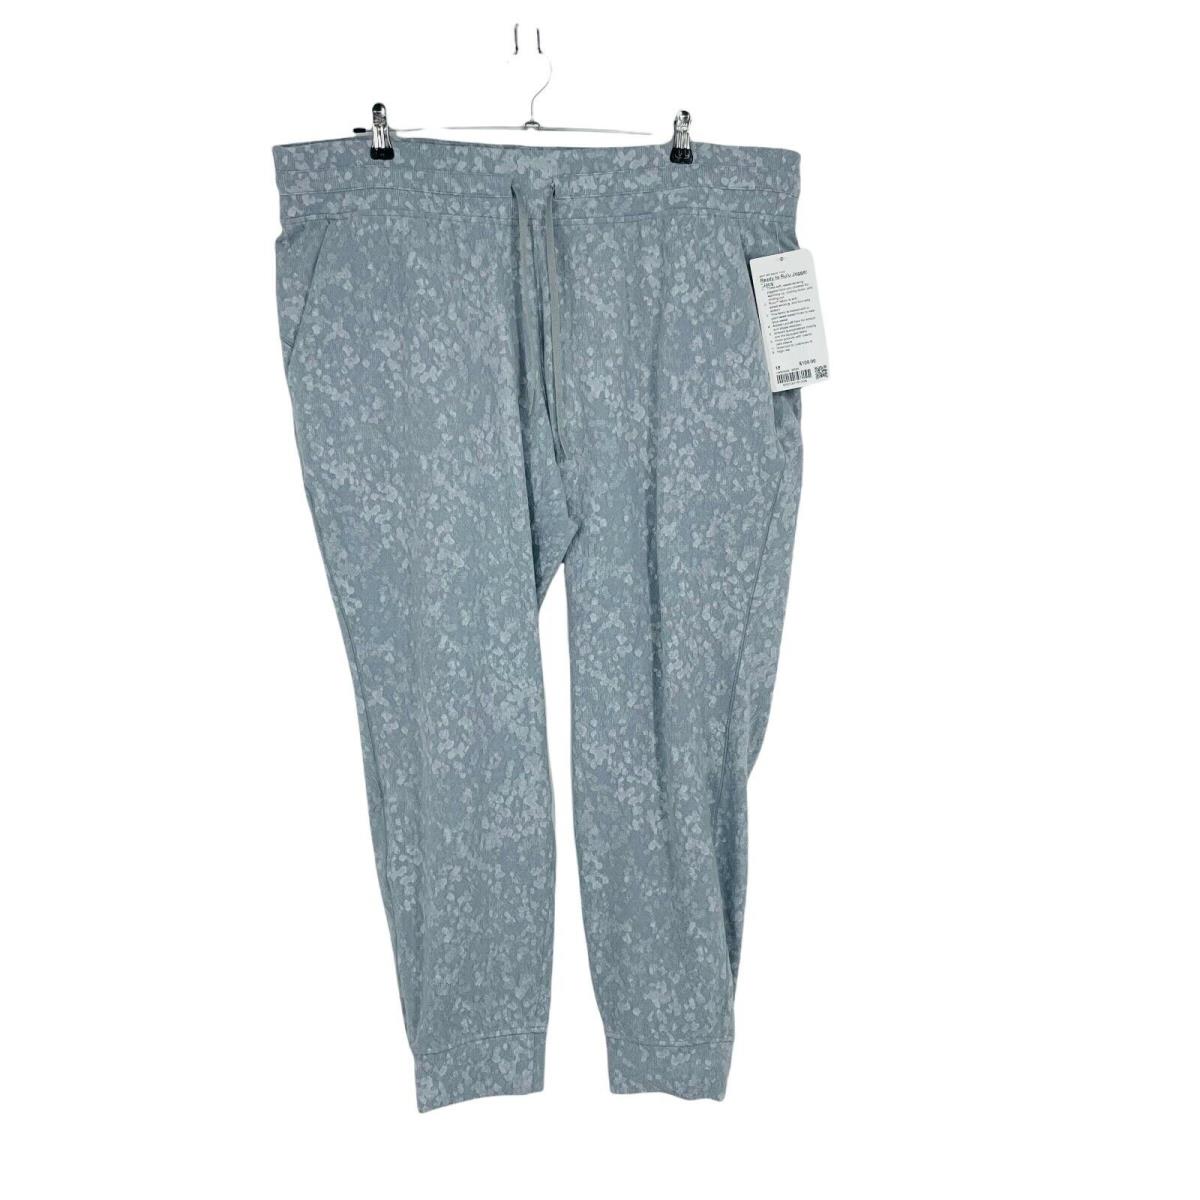 Lululemon Jogger Pants Ready to Rulu Gray Size 18 Women Sweatpants Lounge